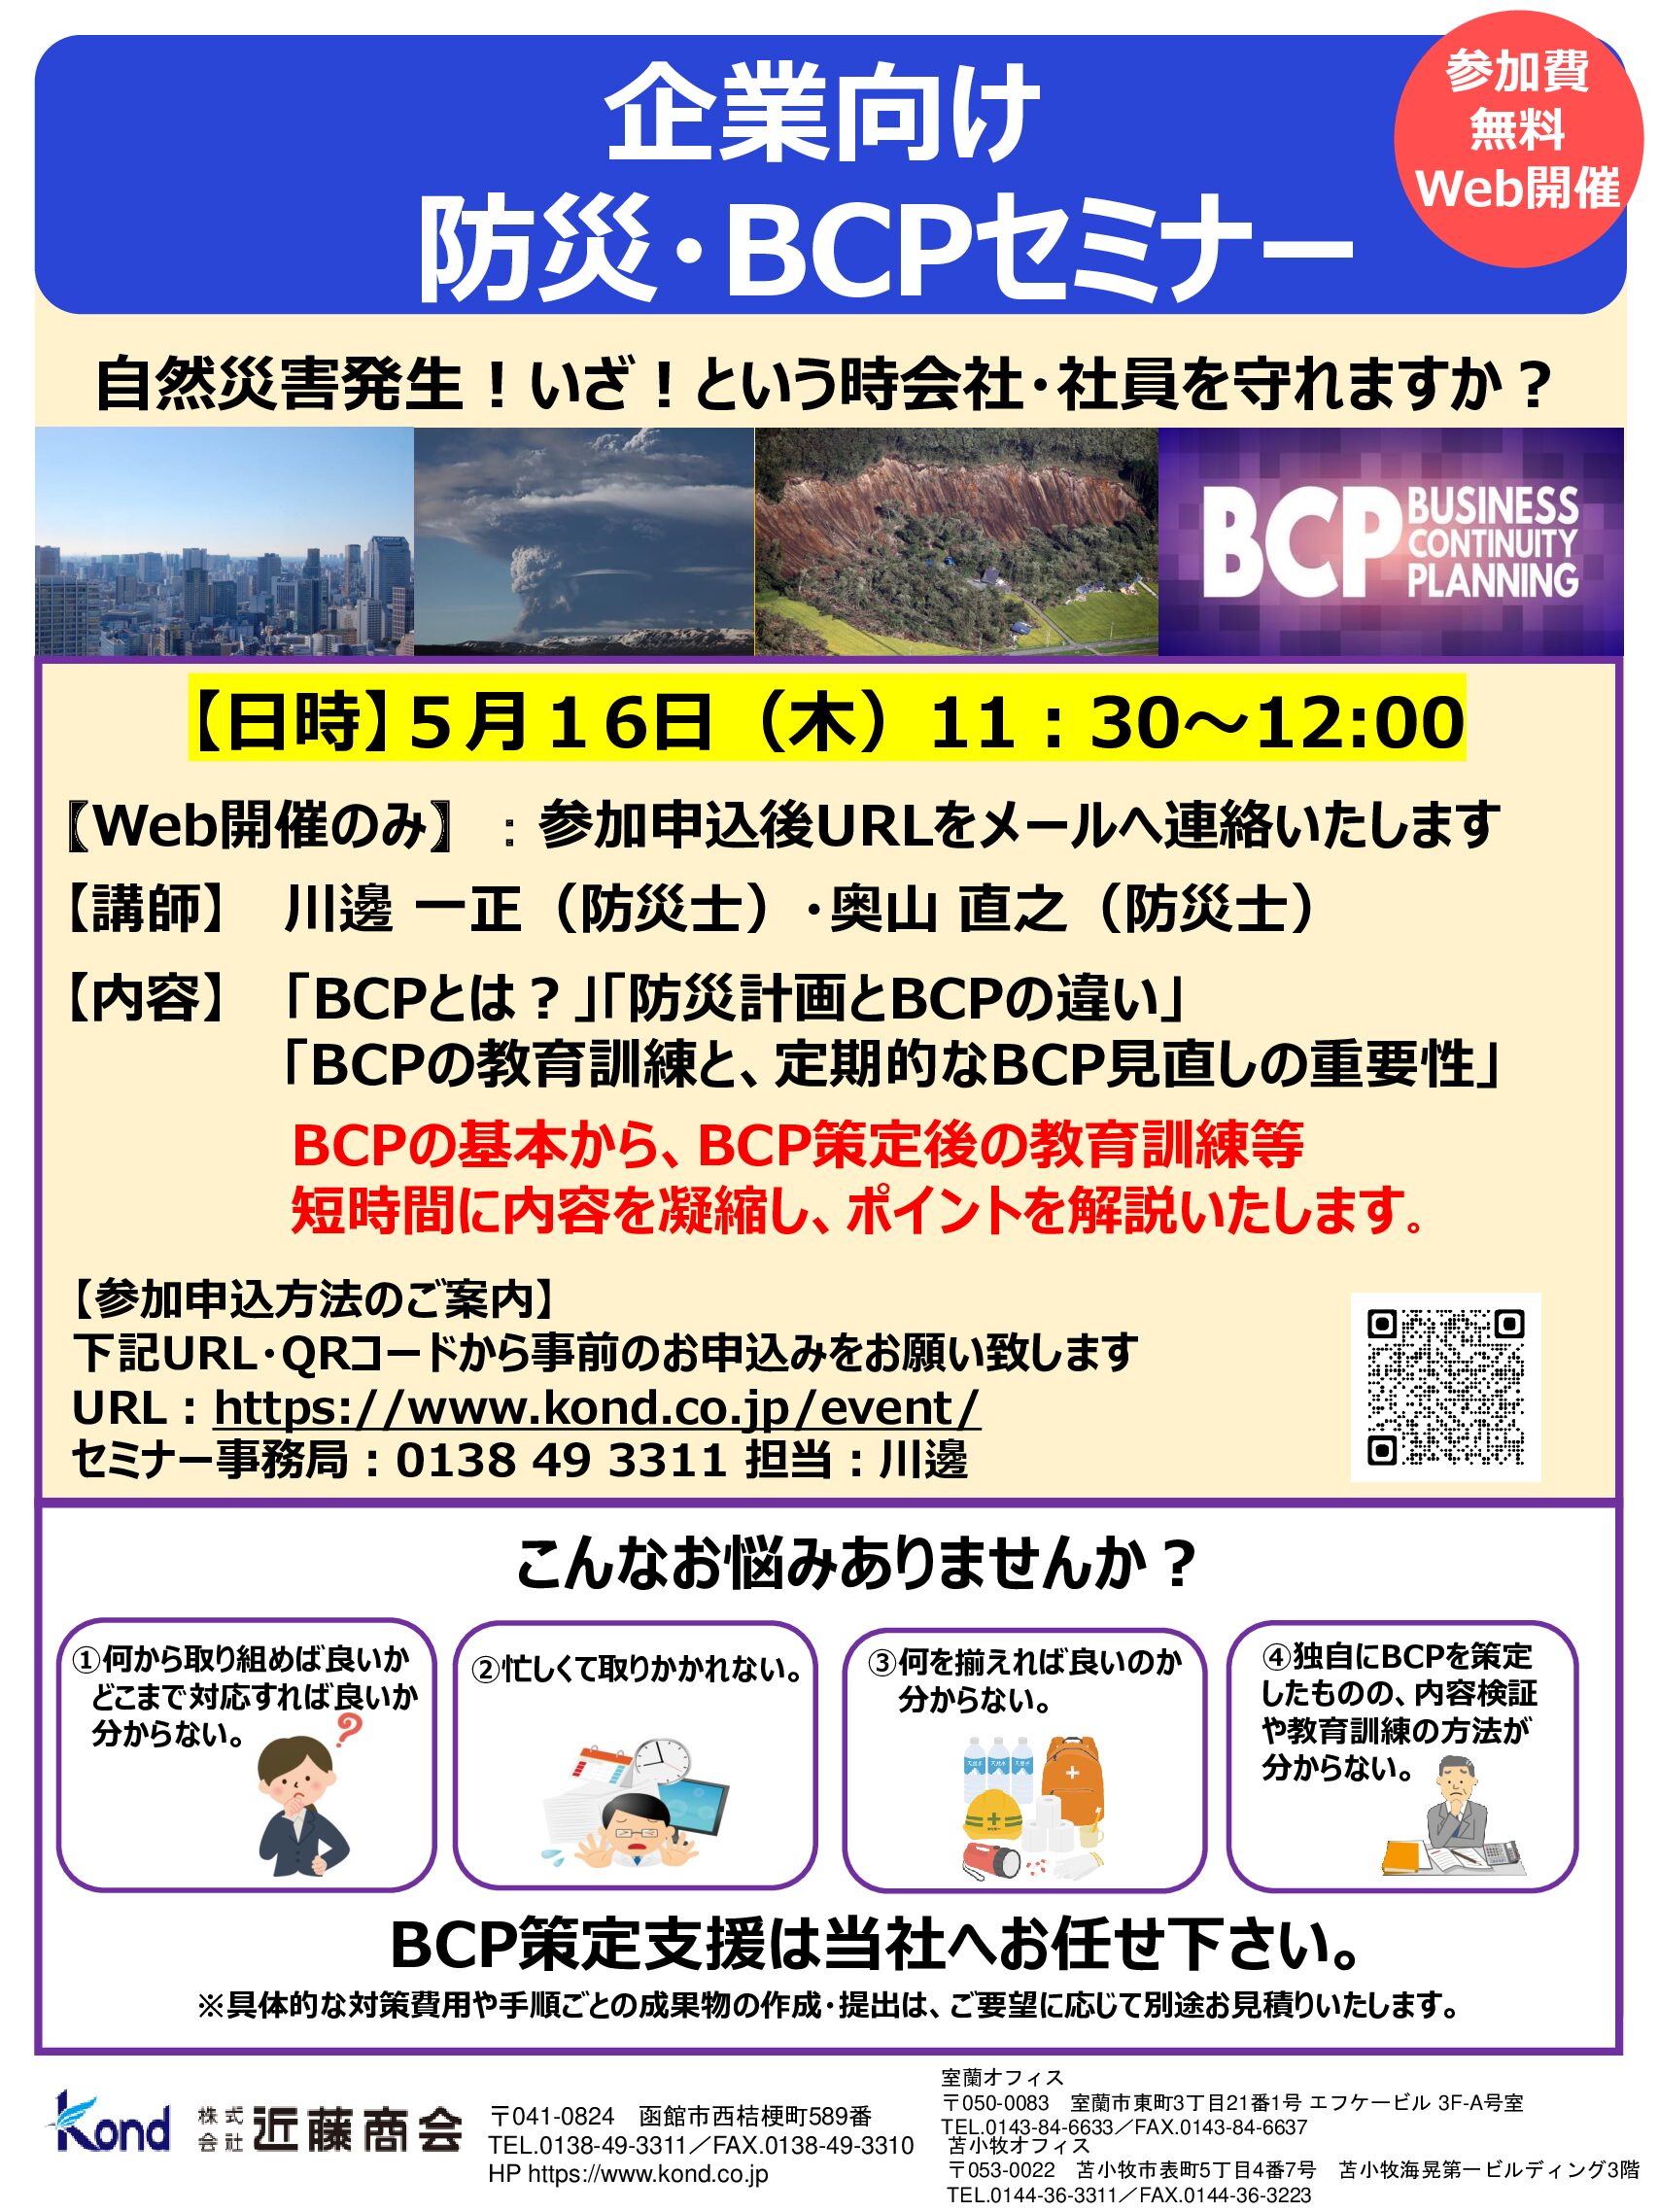 5/16(木) 企業向け防災・BCPセミナーのお知らせ